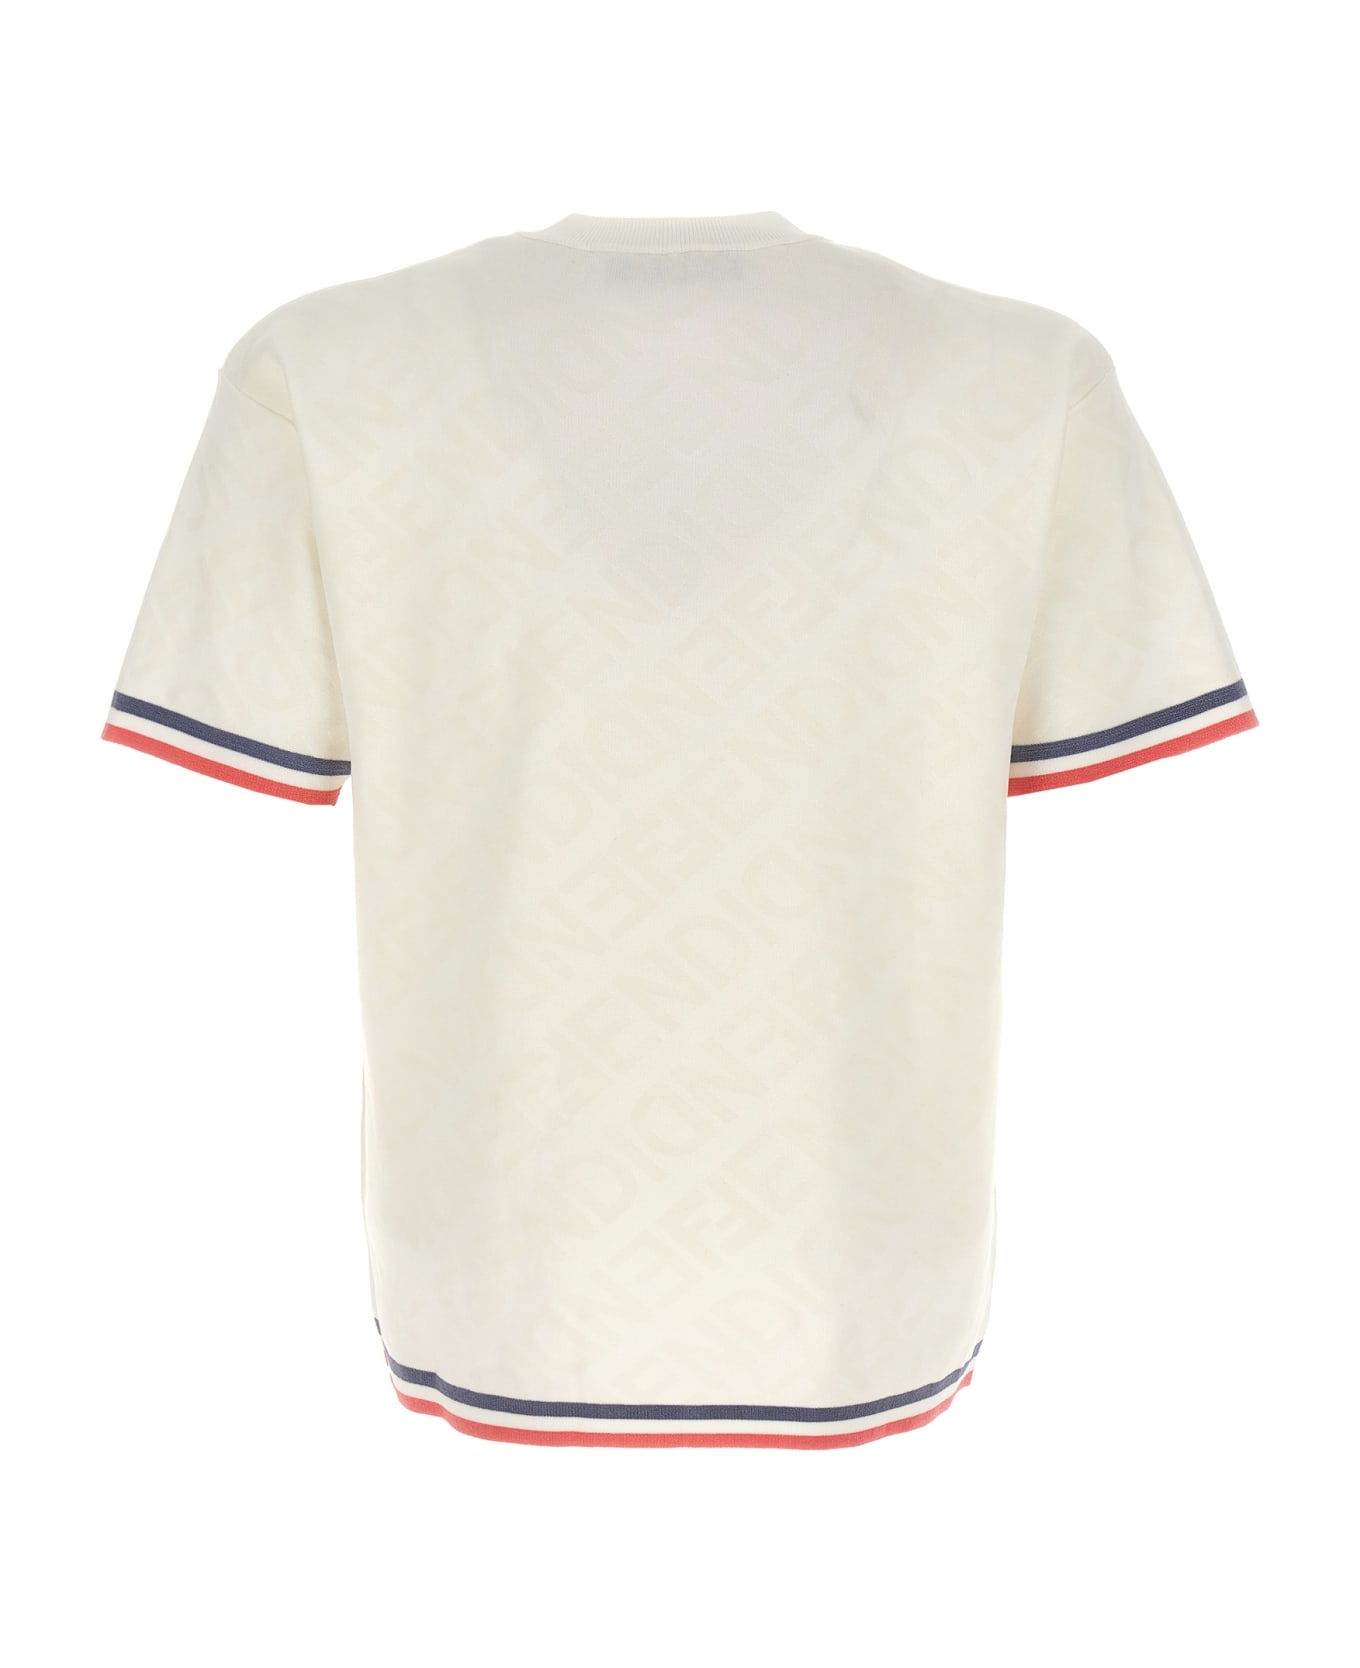 Fendi Viscose Blend T-shirt - White Tシャツ